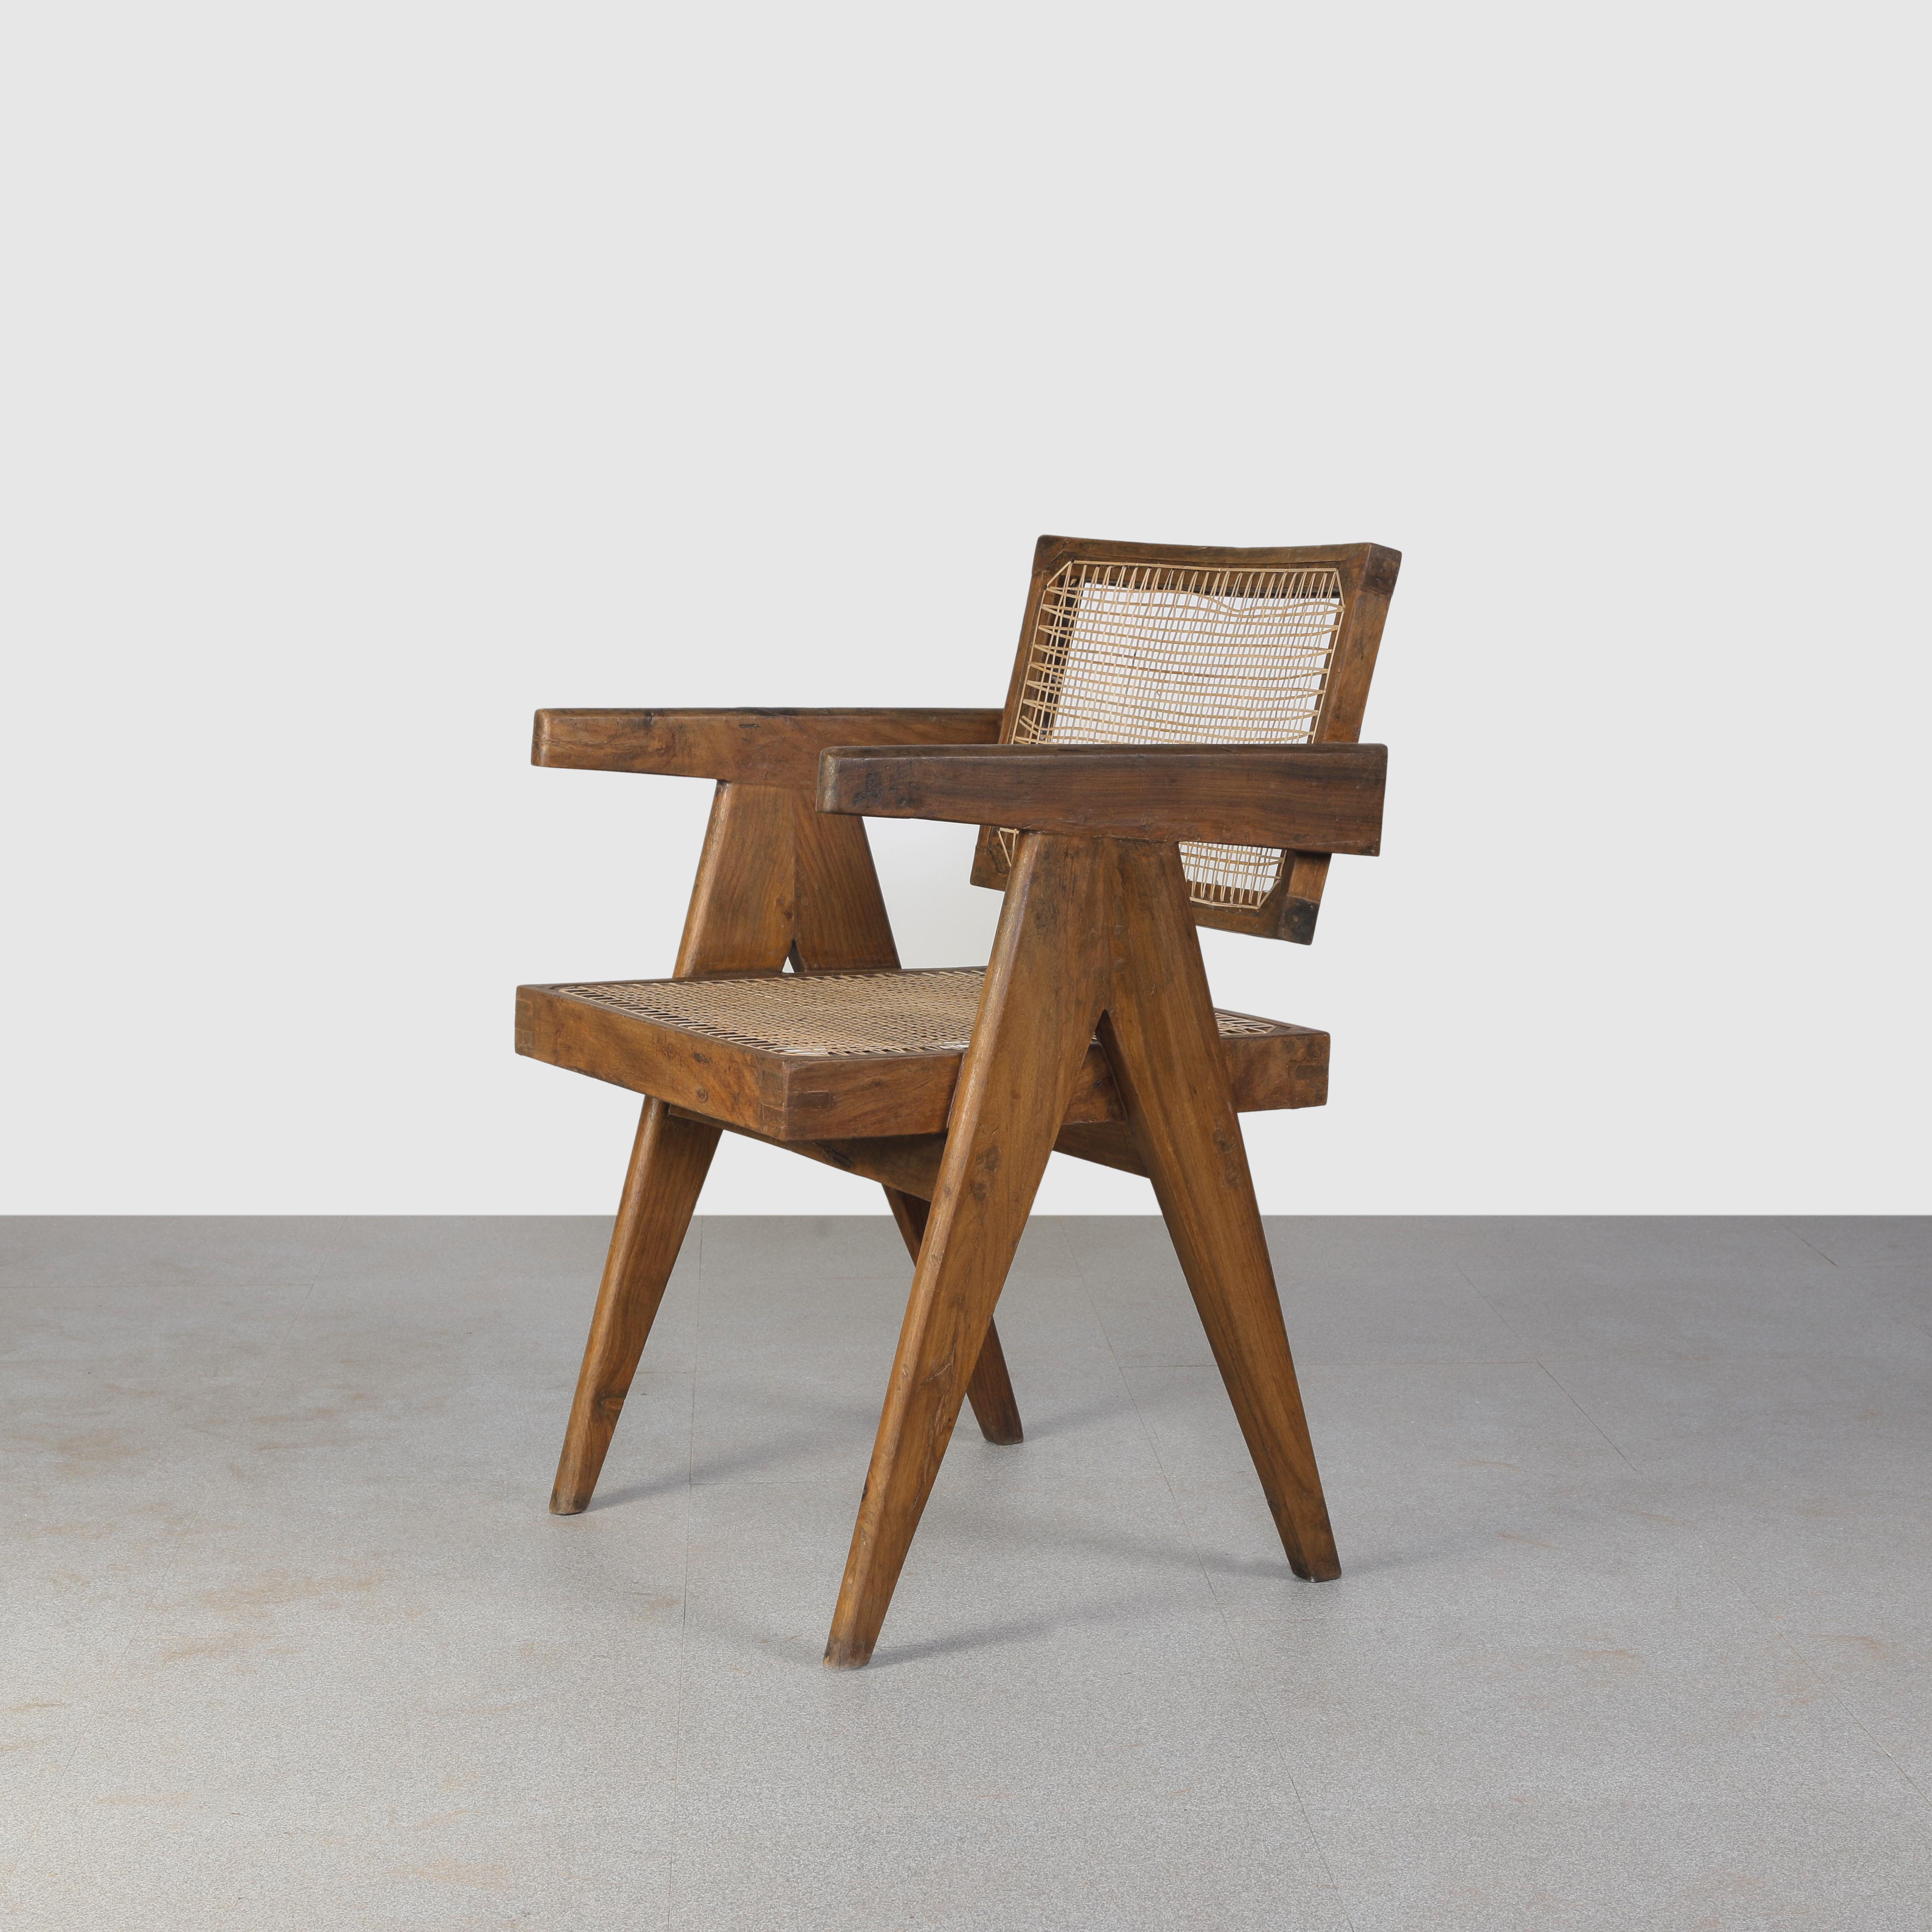 Dieser Stuhl ist eine Ikone des Designs. Es ist roh in seiner Einfachheit zeigt es ein leicht patiniertes Material. Es ist ziemlich rau und hat eine wunderschöne Farbe. Wir restaurieren sie nicht allzu sehr. So bewahren wir so viel wie möglich von